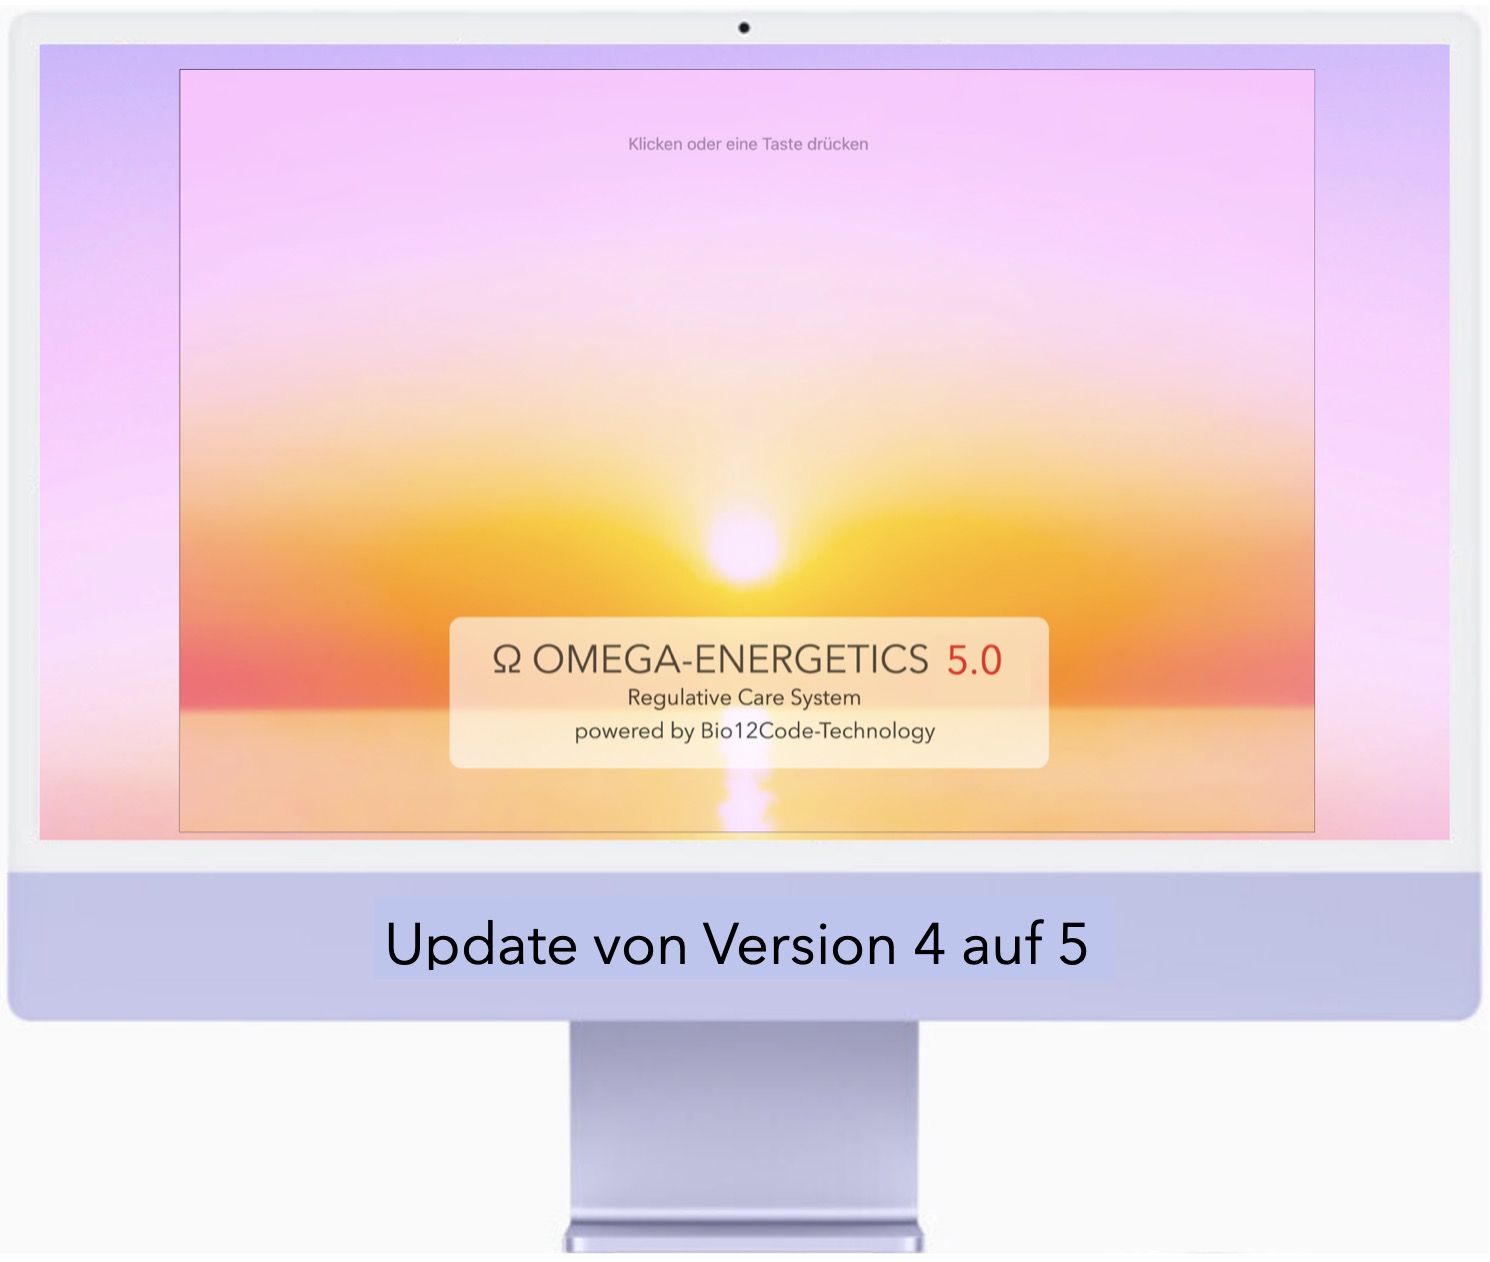 G - Omega-Energetics Update von Version 4 auf Version 5